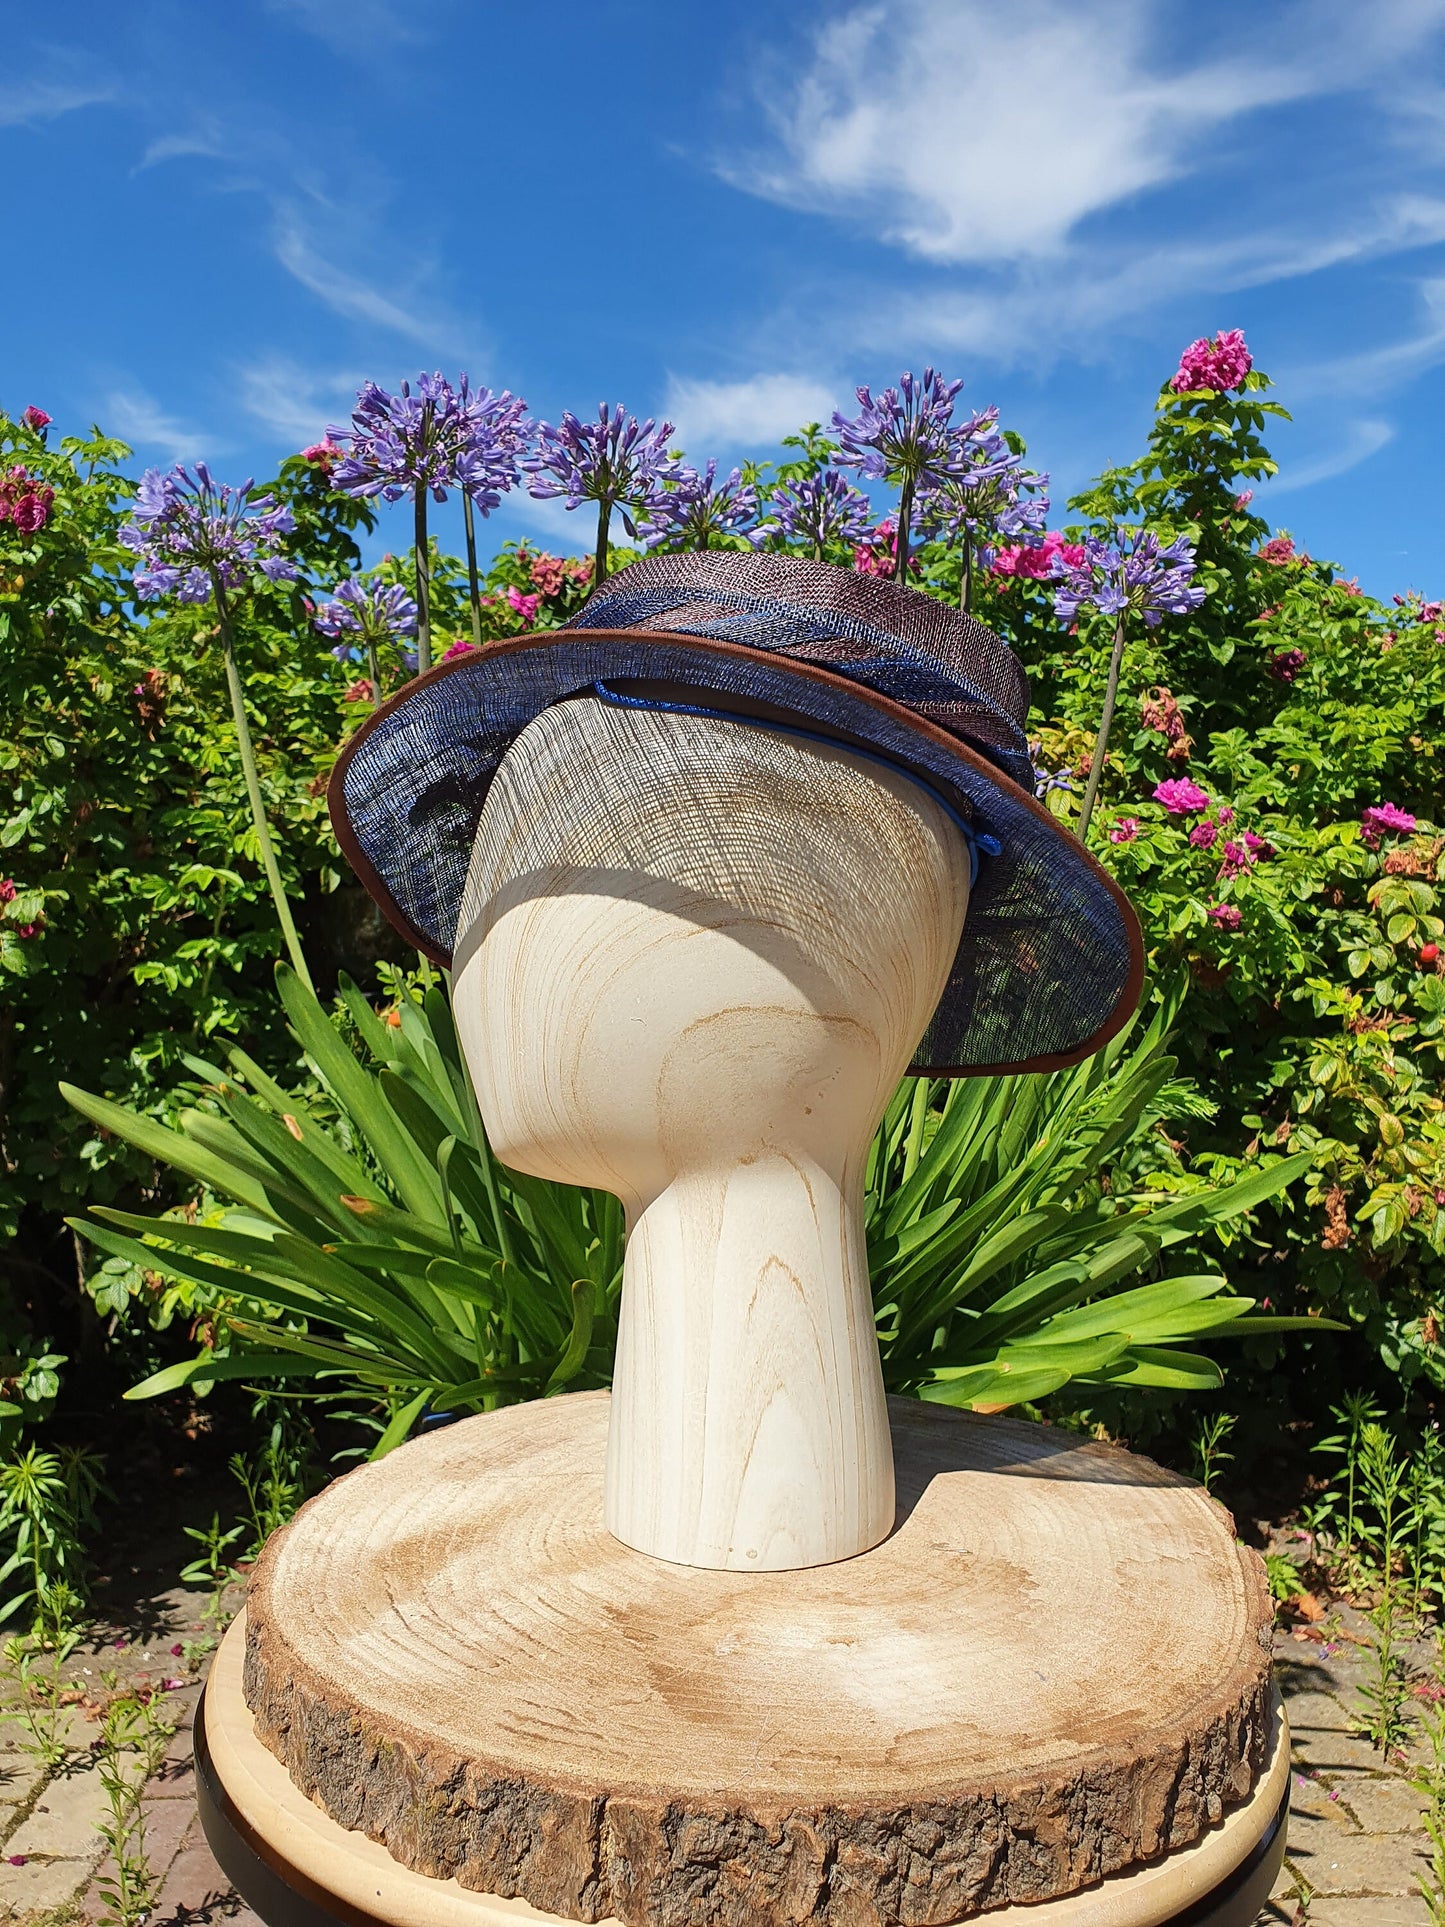 Elegante sombrero de sinamay hecho a mano en color azul y marrón- Estilo elegante para cualquier ocasión, sombrero de evento, sombrero de boda, sombrero de invitada